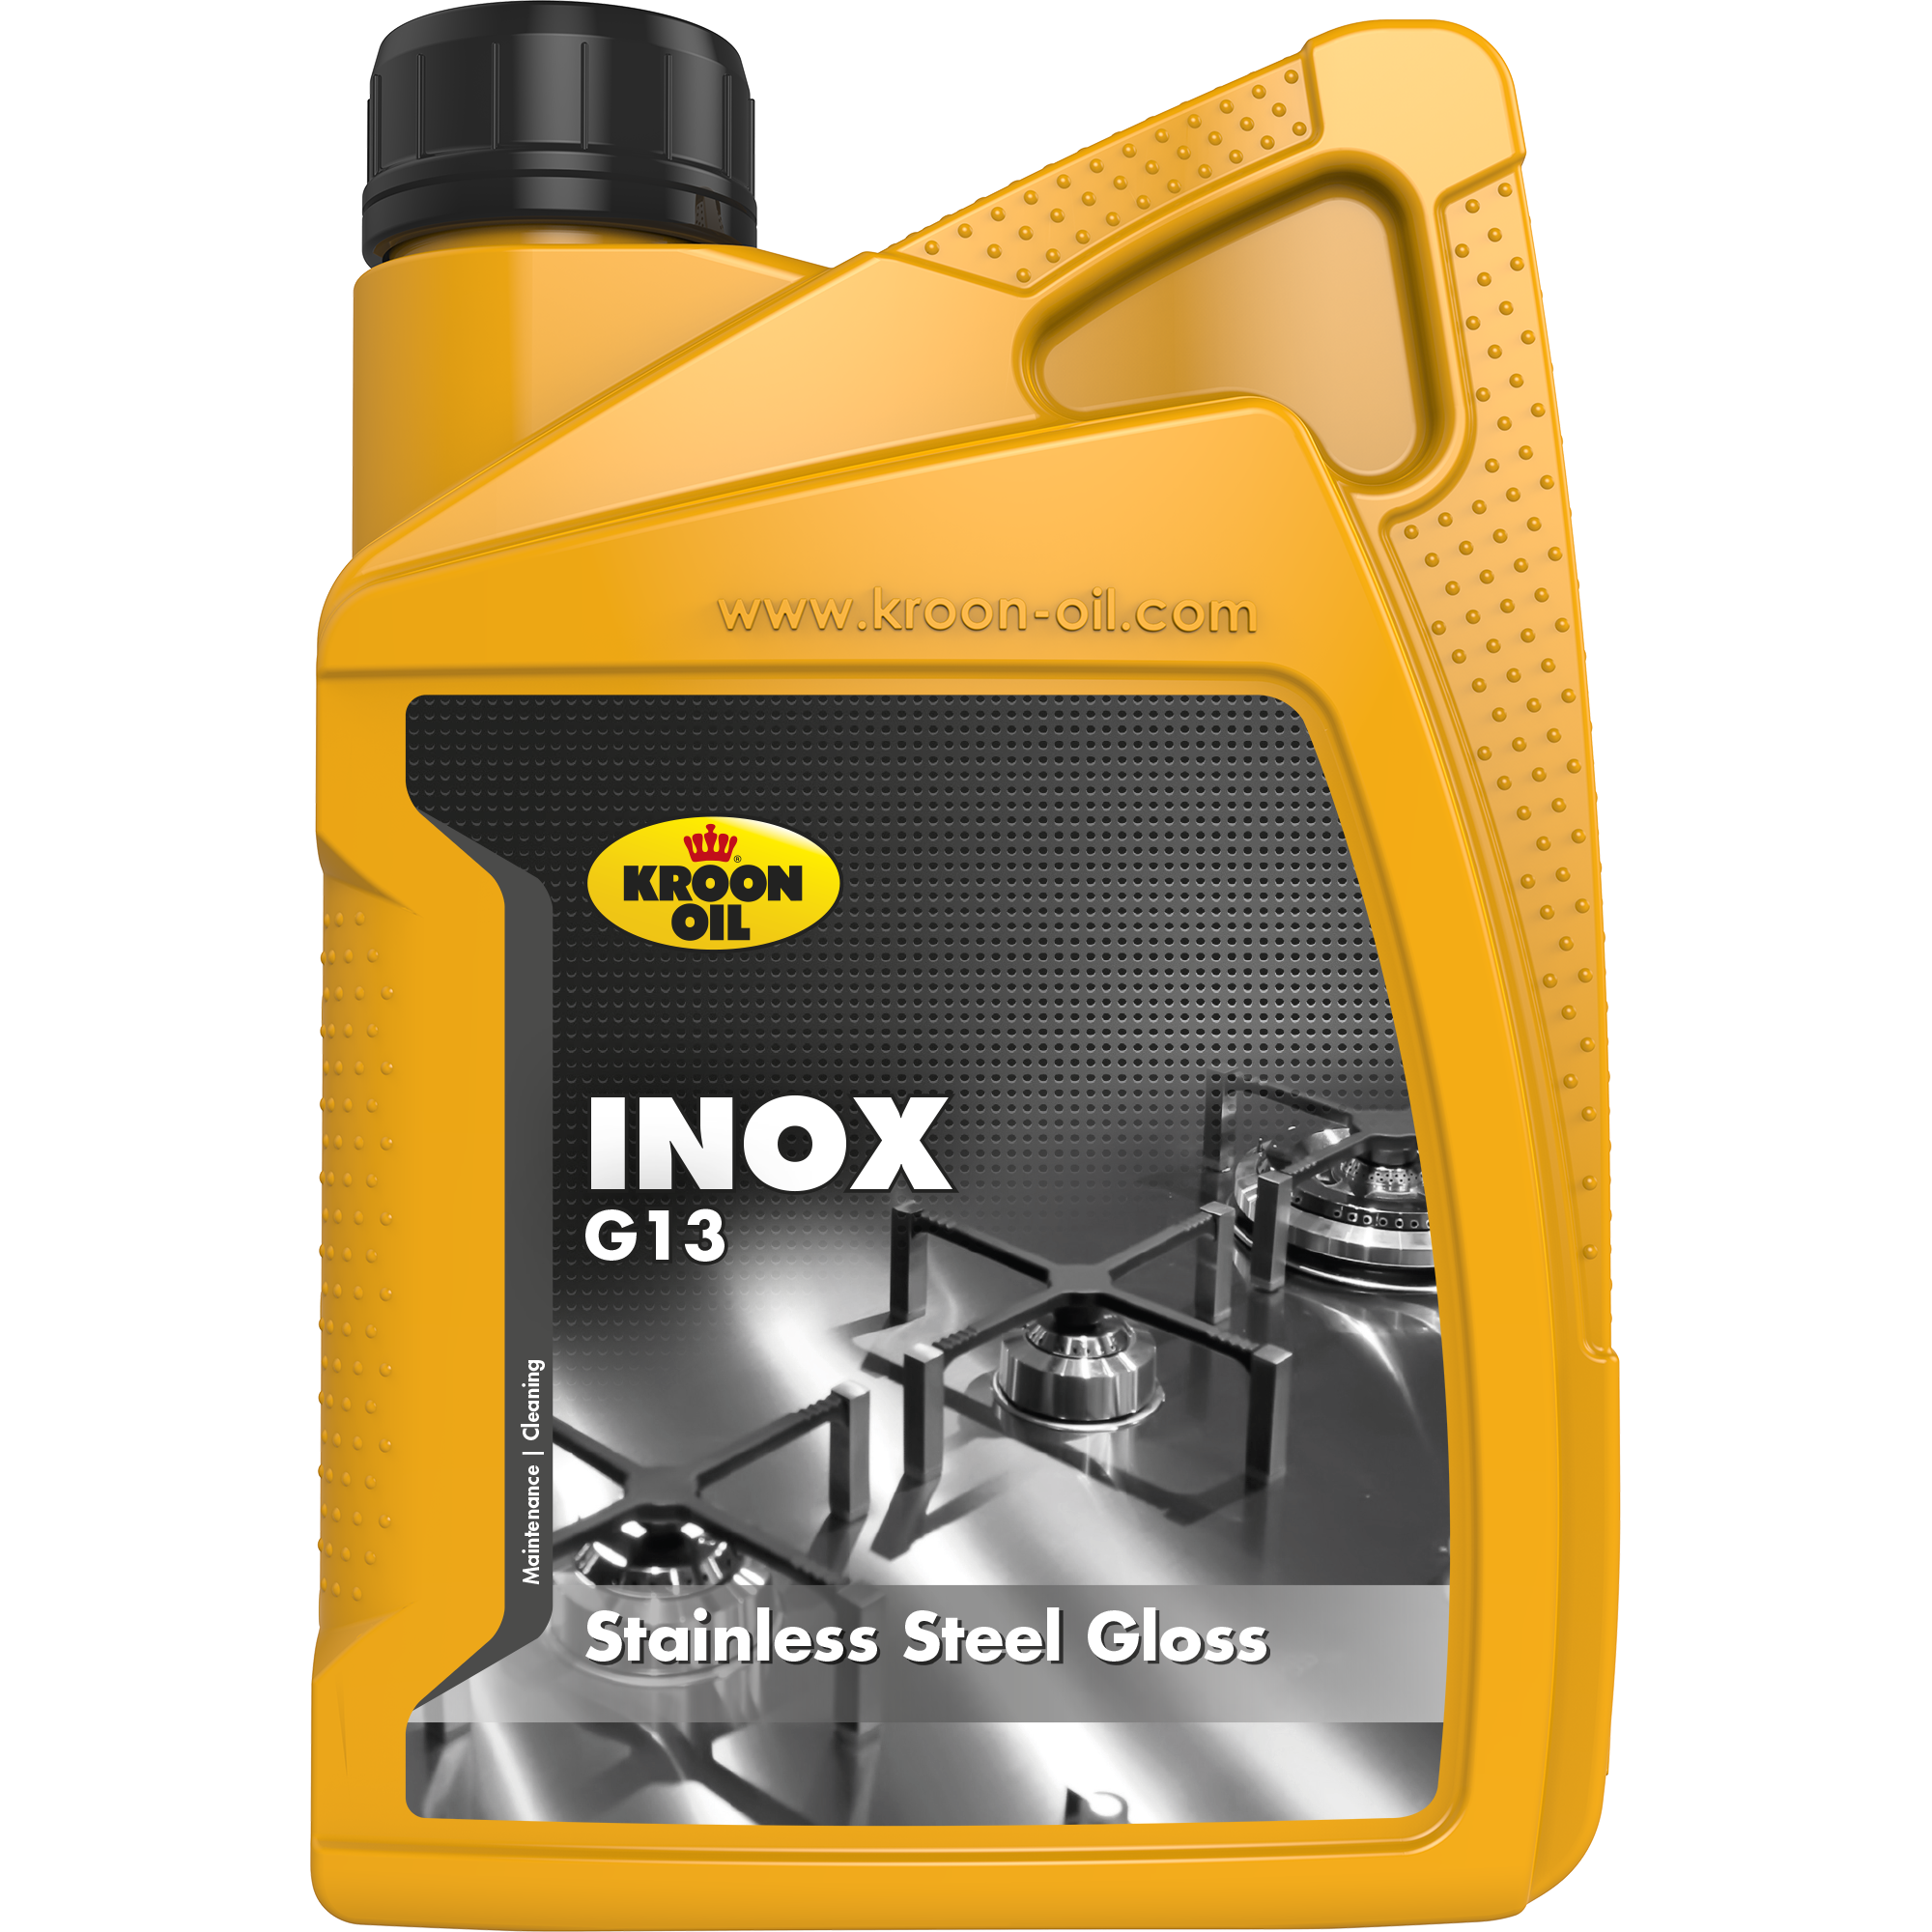 35699-1 Inox G13 is een reinigingsmiddel dat vingerafdrukken en andere verontreinigen snel en moeiteloos verwijdert.